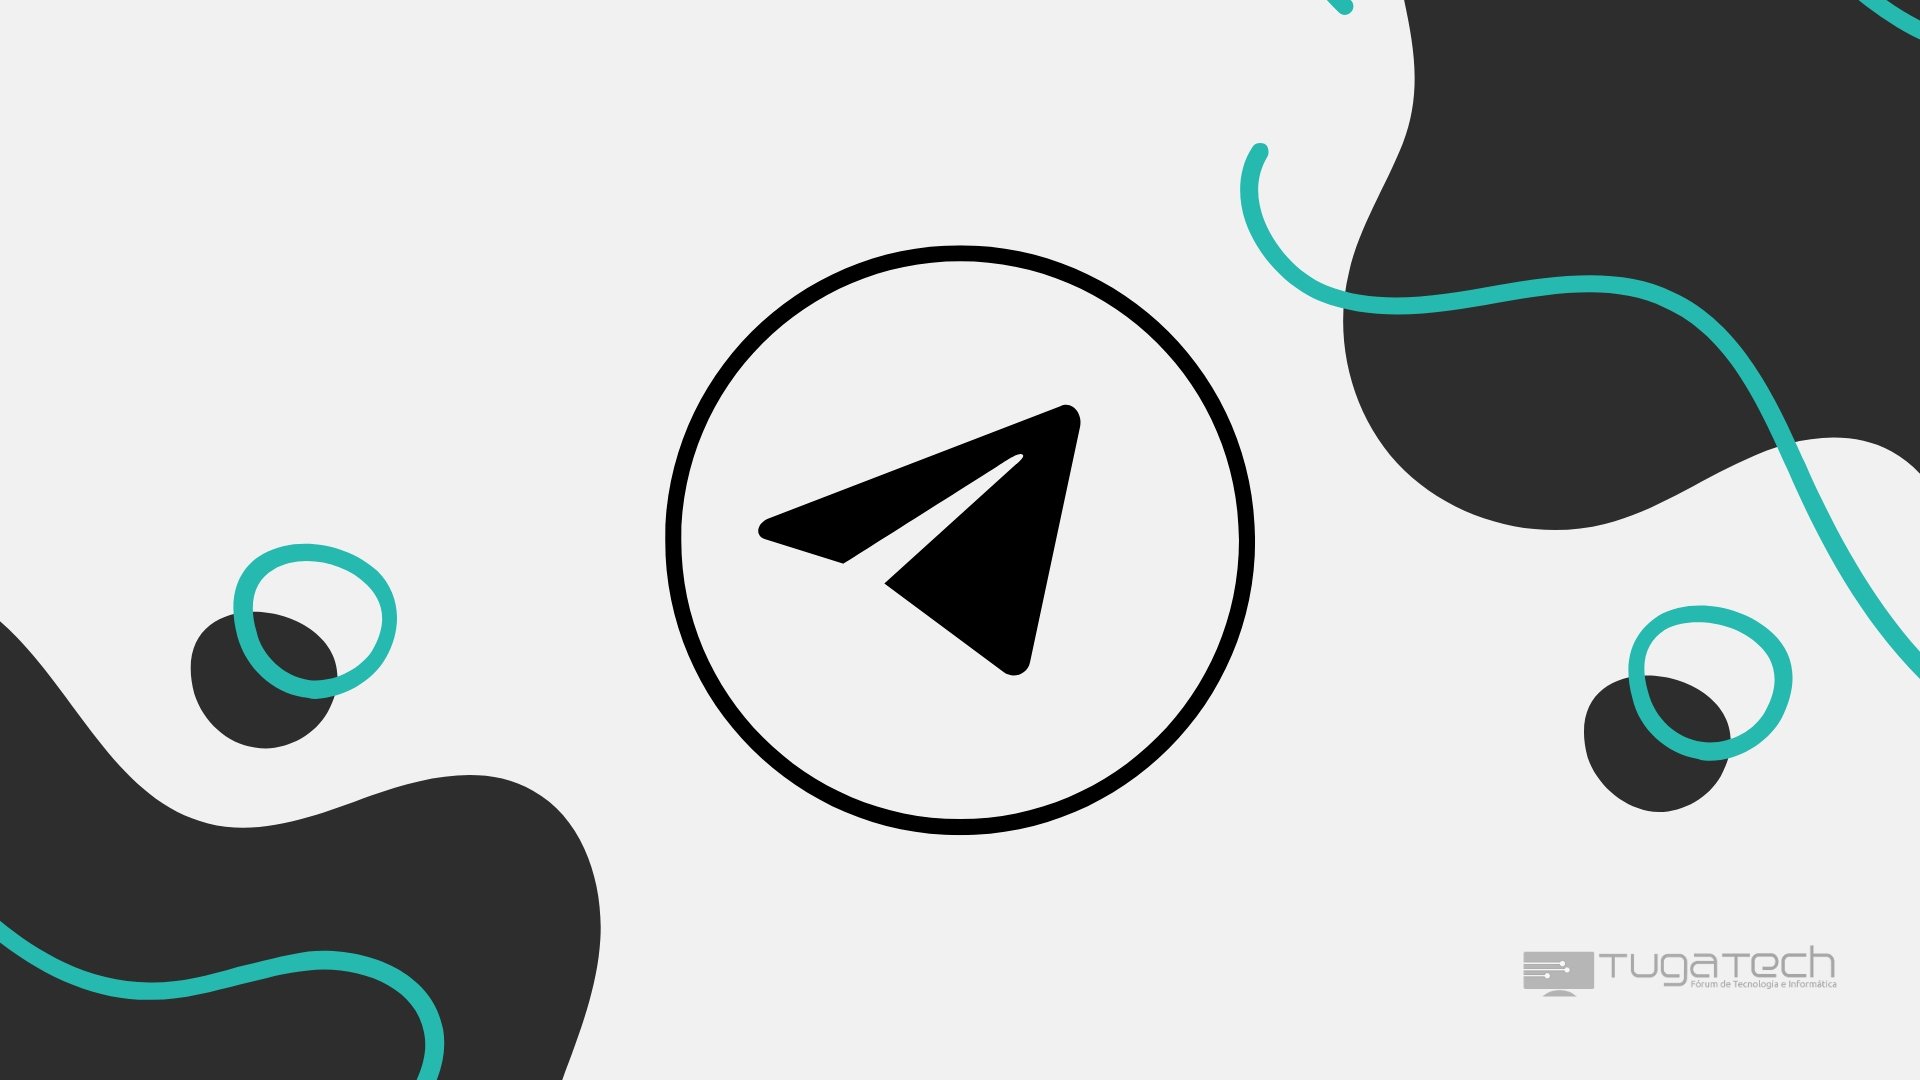 Logo do Telegram